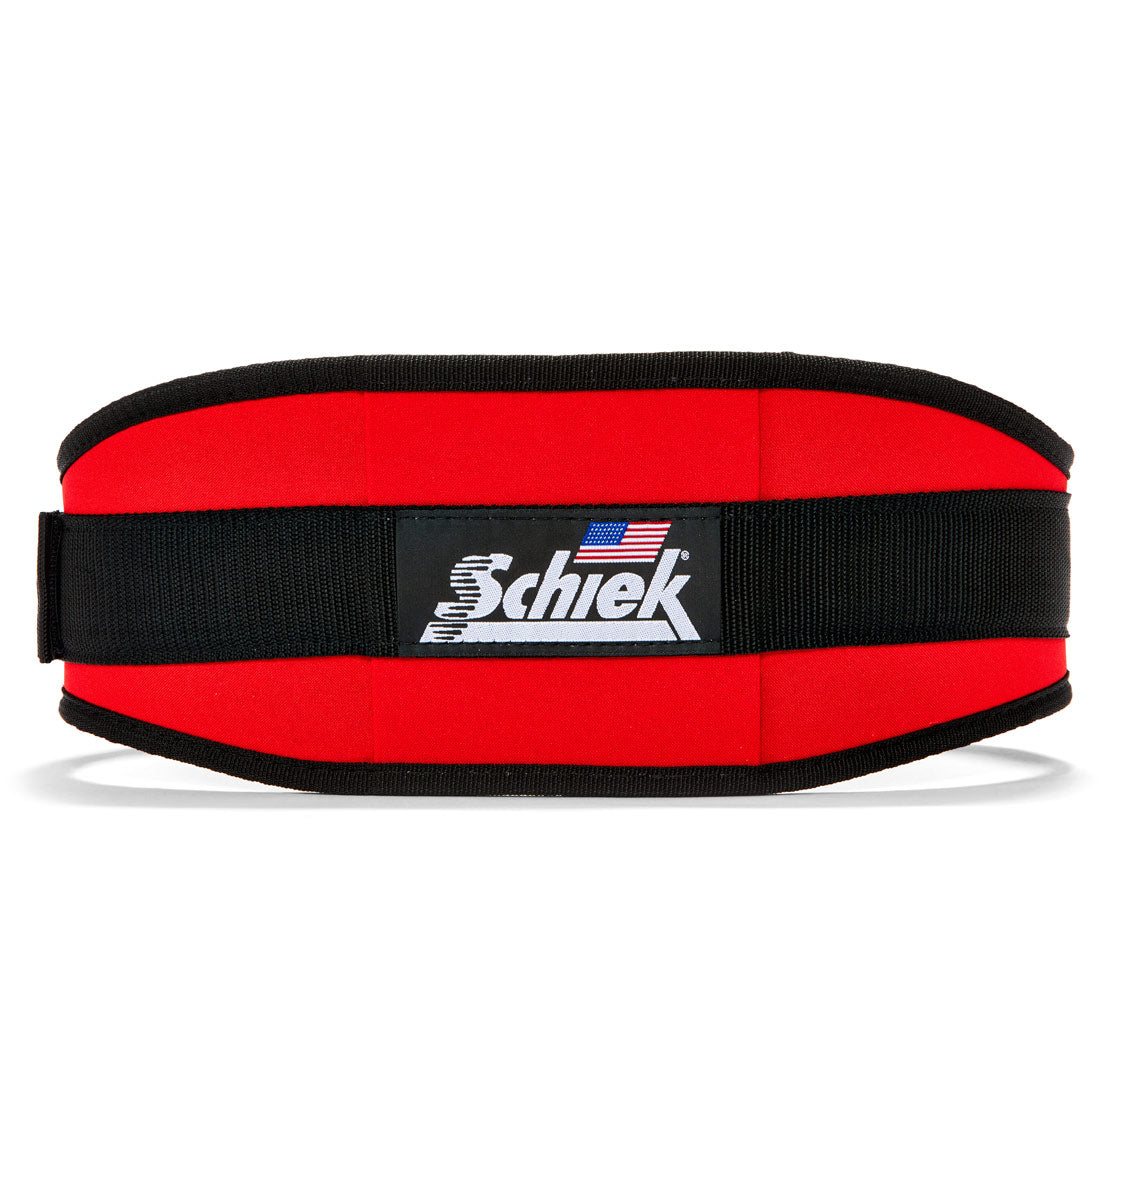 2006 Schiek Contour Weight Lifting Belt Red Back